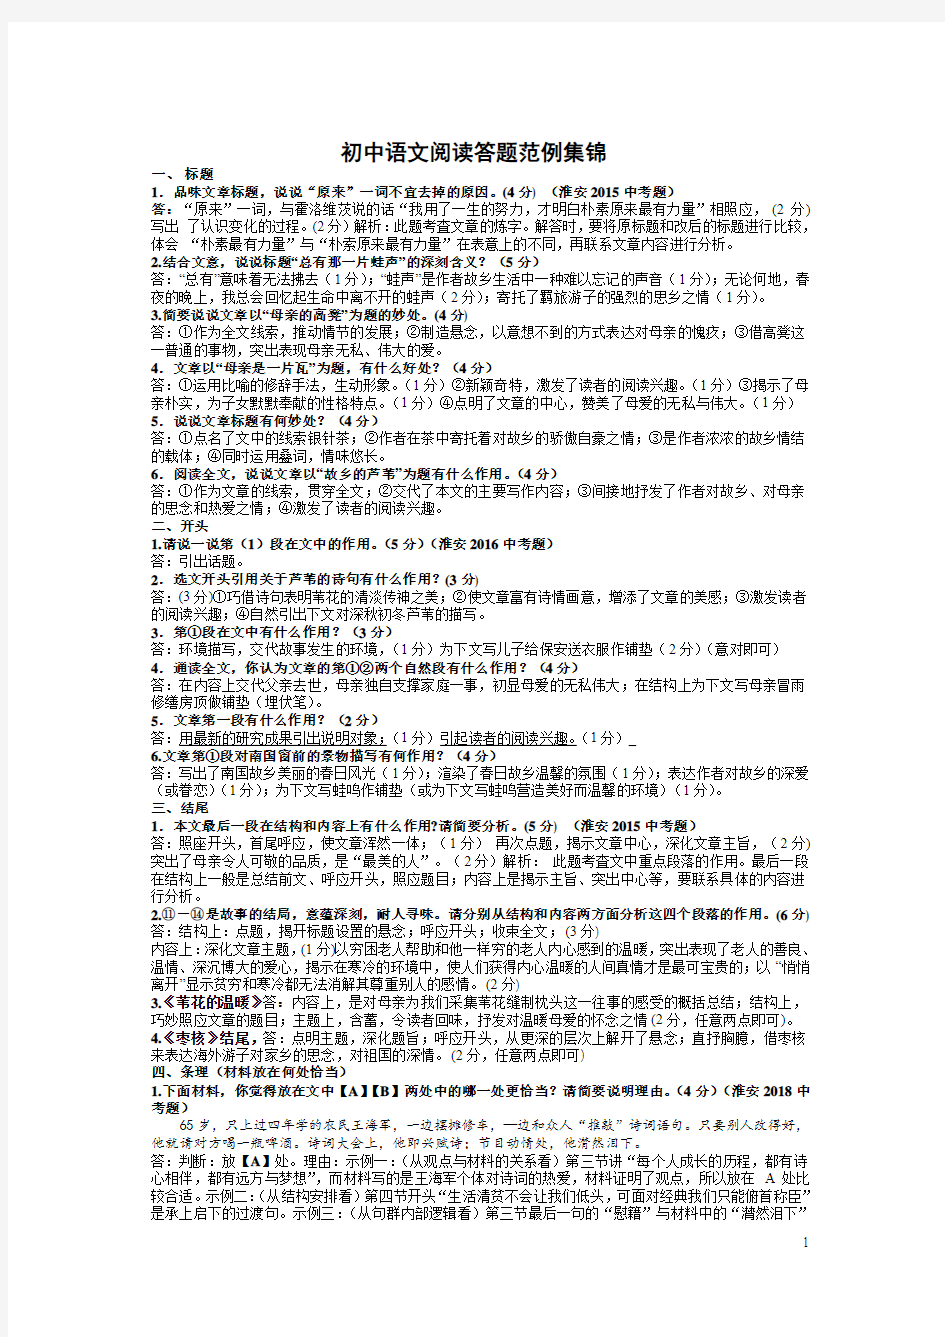 初中语文阅读答题范例集锦